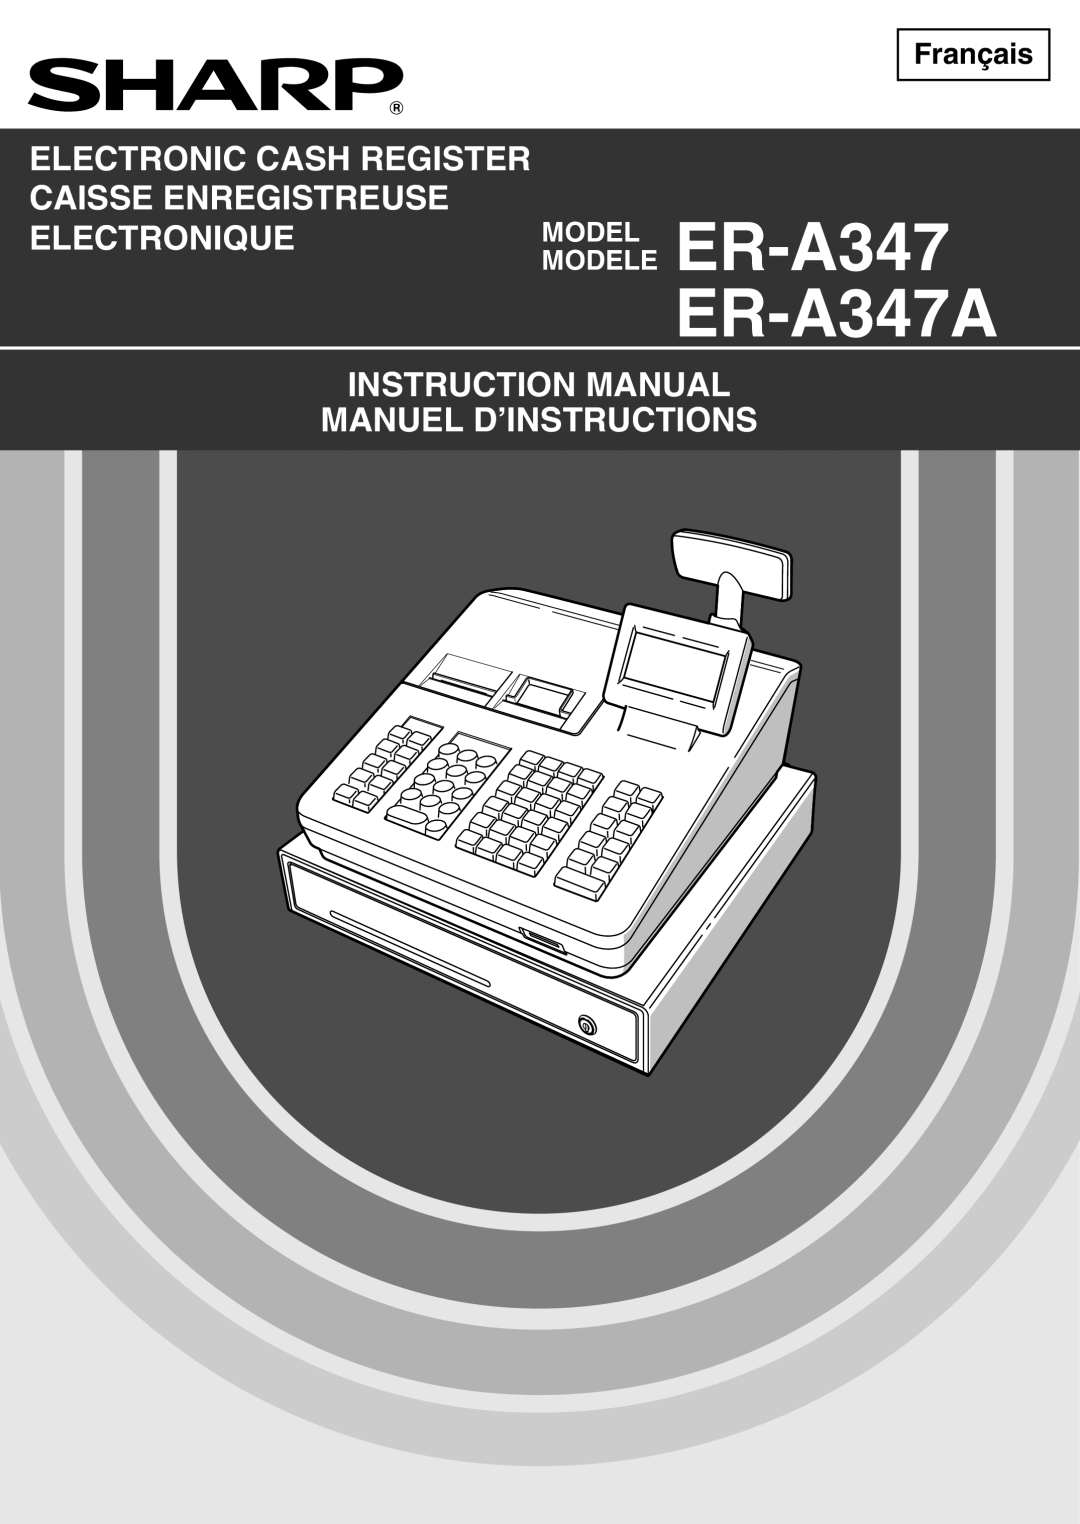 Sharp instruction manual ER-A347 ER-A347A, Electronic Cash Register Caisse Enregistreuse Electronique, Français 